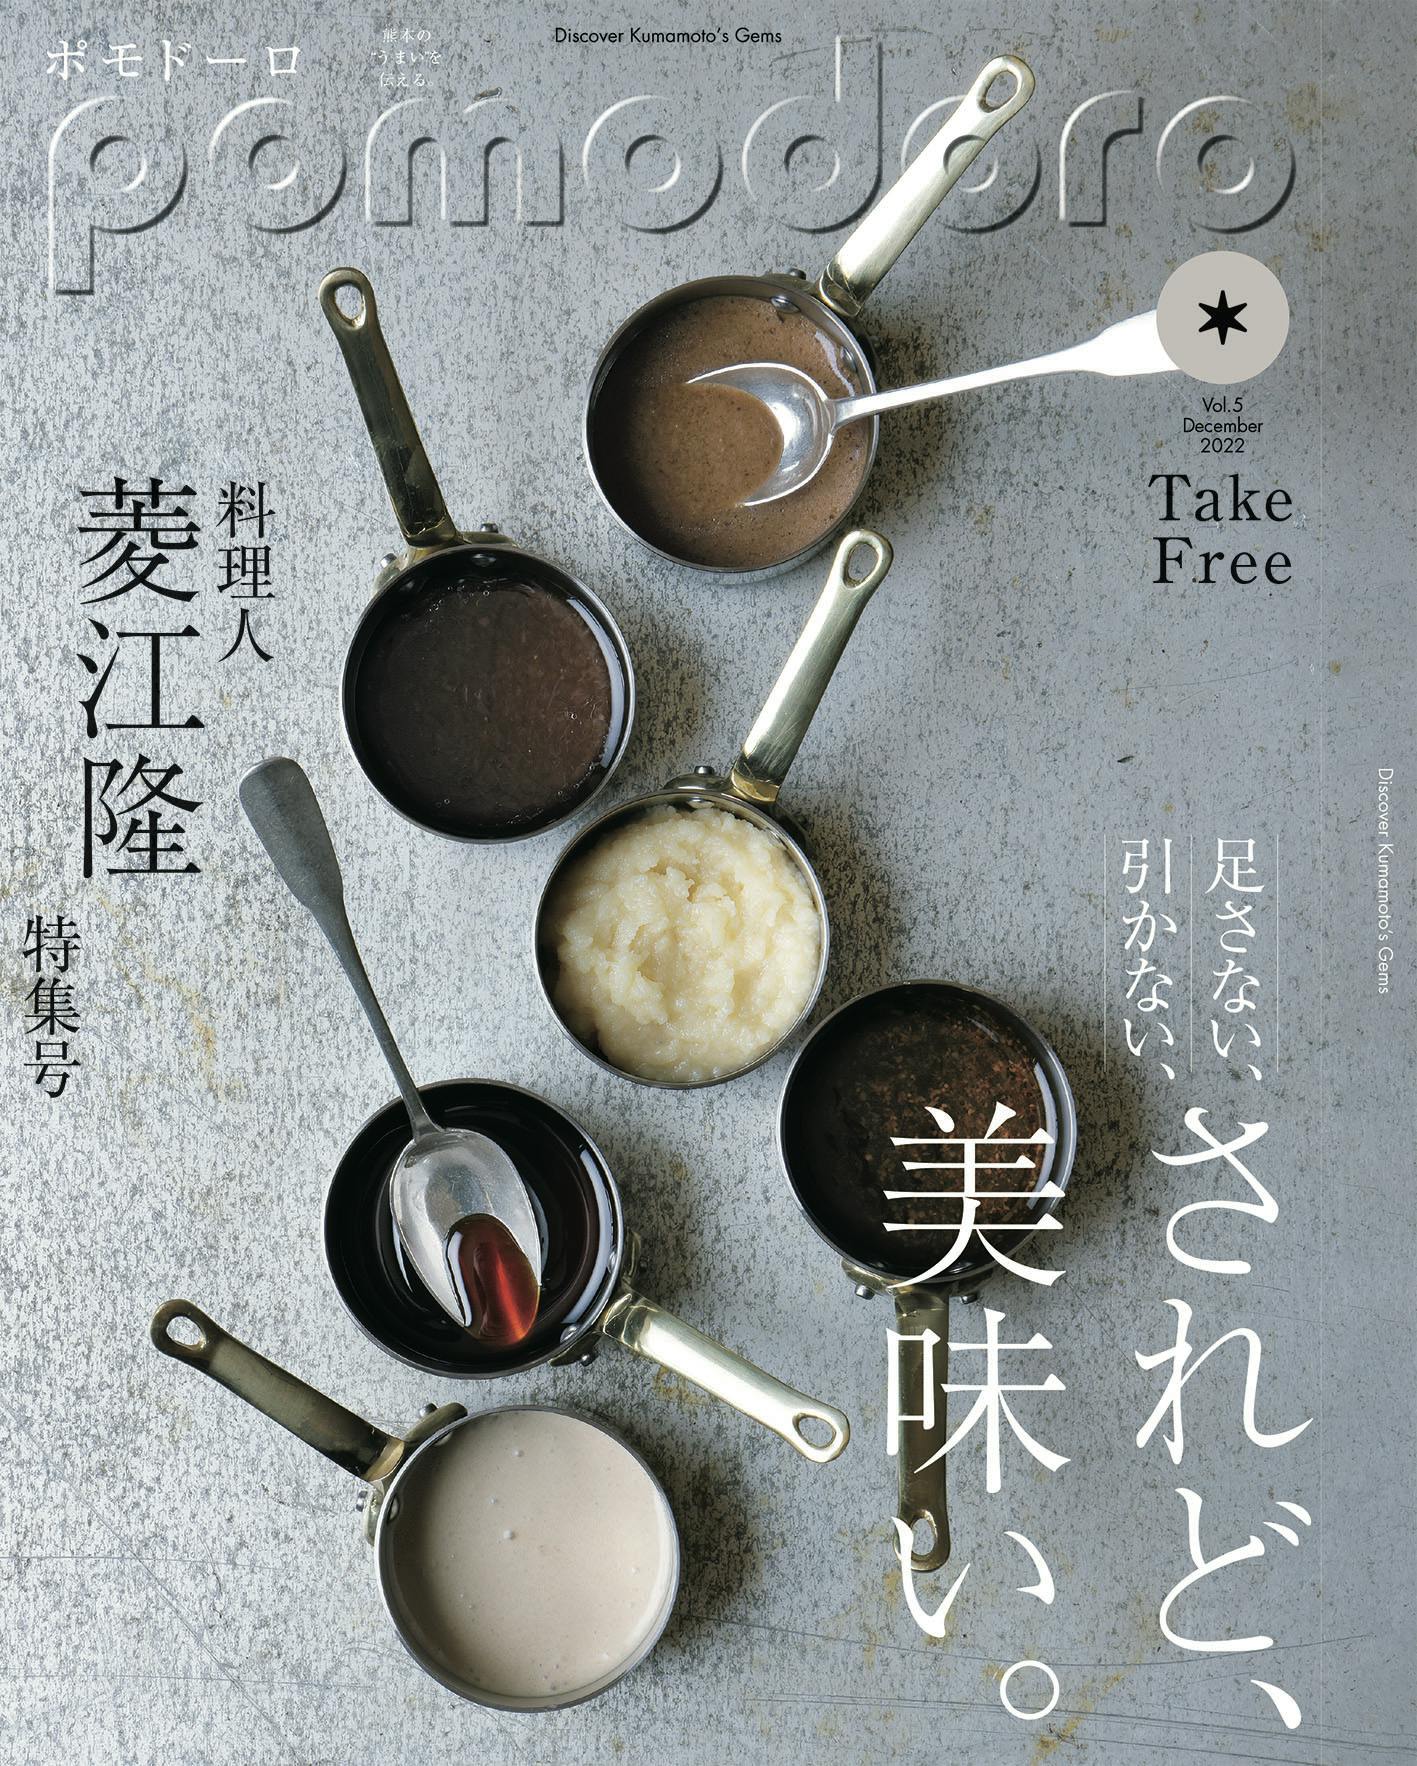 Số thứ 5 của "pomodoro", tạp chí miễn phí truyền tải sự "ngon miệng" của Kumamoto, đã được xuất bản!